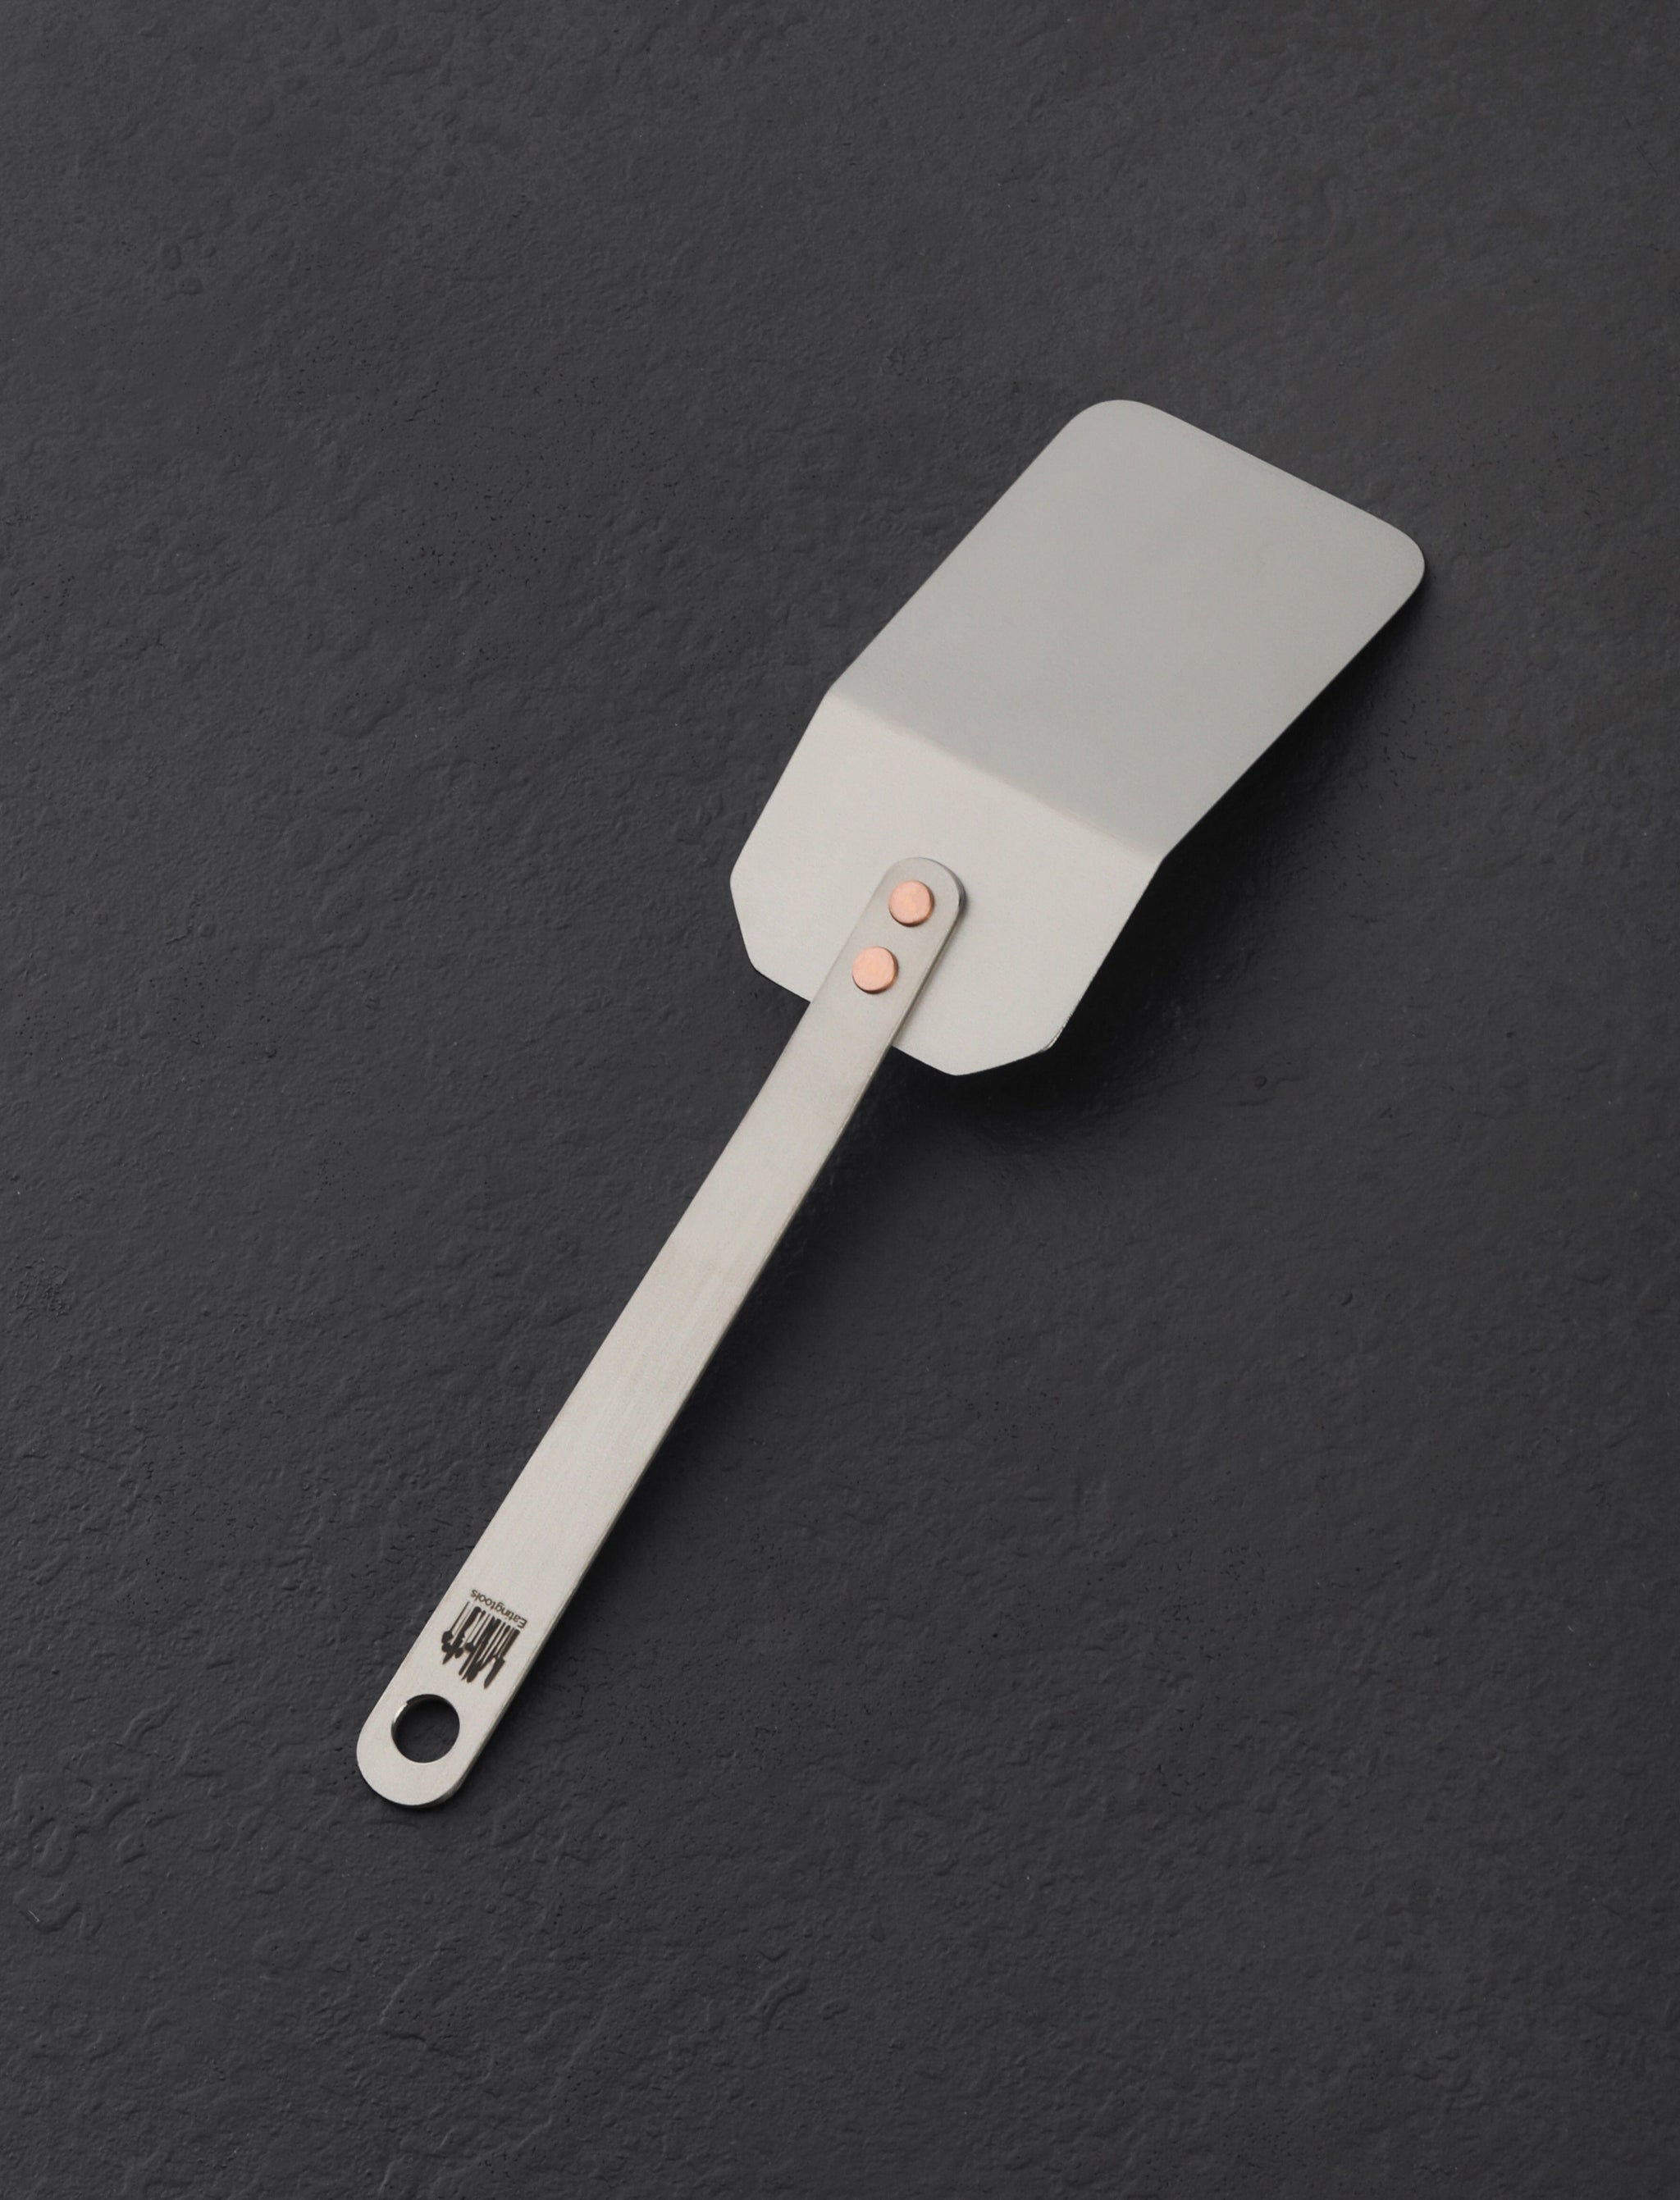 https://eatingtools.com/cdn/shop/files/spatulas-ben-tendick-oregon-tispats-mini-titanium-spatula-43020338790675.jpg?v=1693333804&width=2048